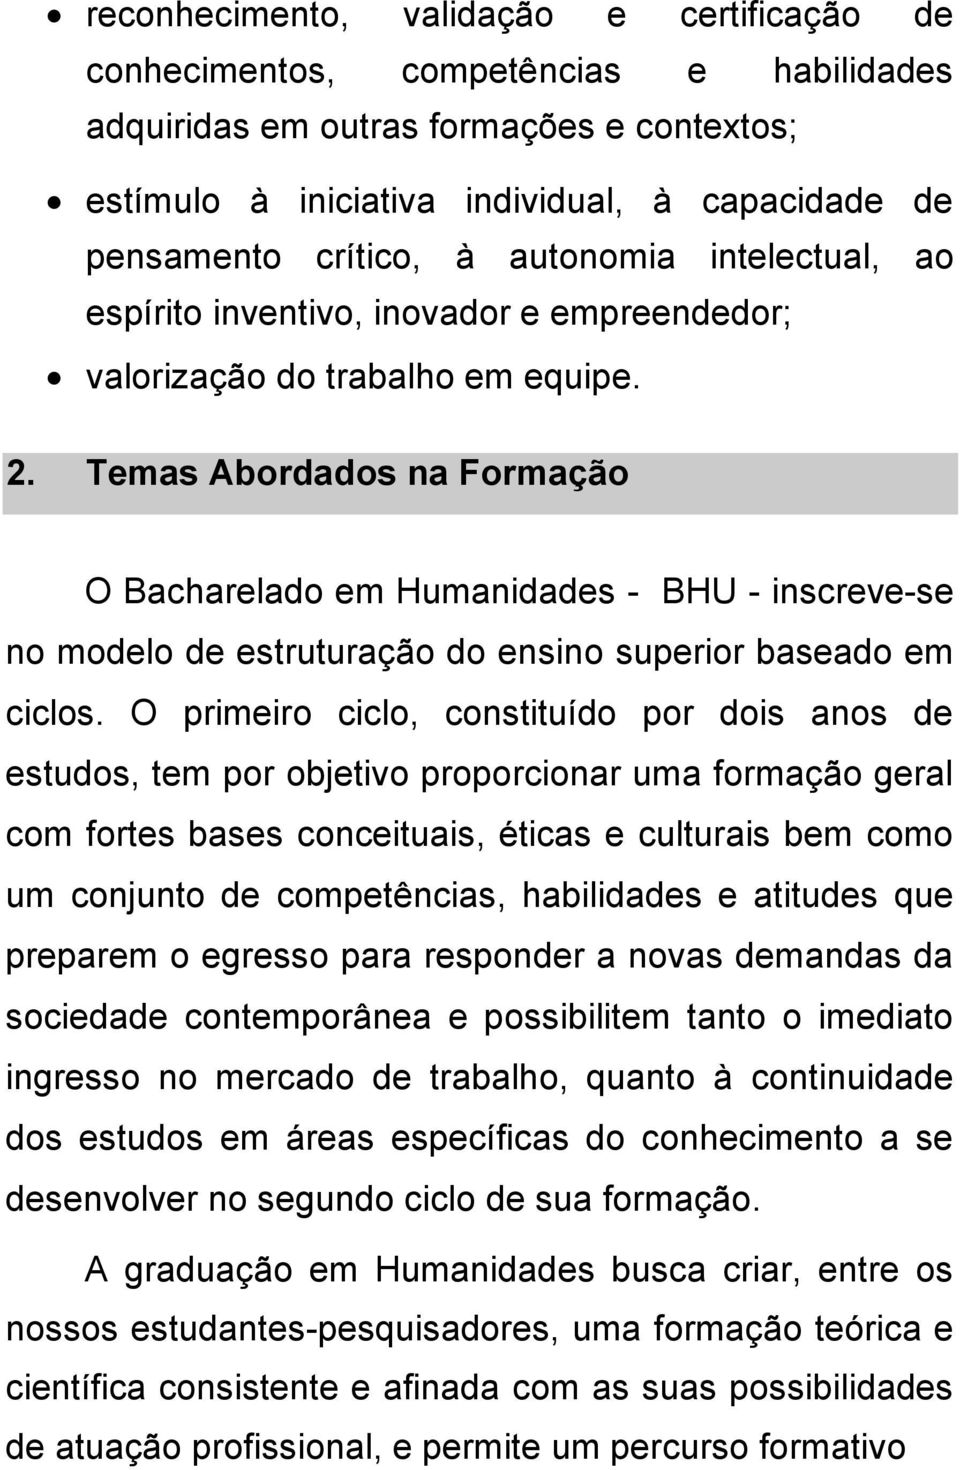 Temas Abordados na Formação O Bacharelado em Humanidades - BHU - inscreve-se no modelo de estruturação do ensino superior baseado em ciclos.